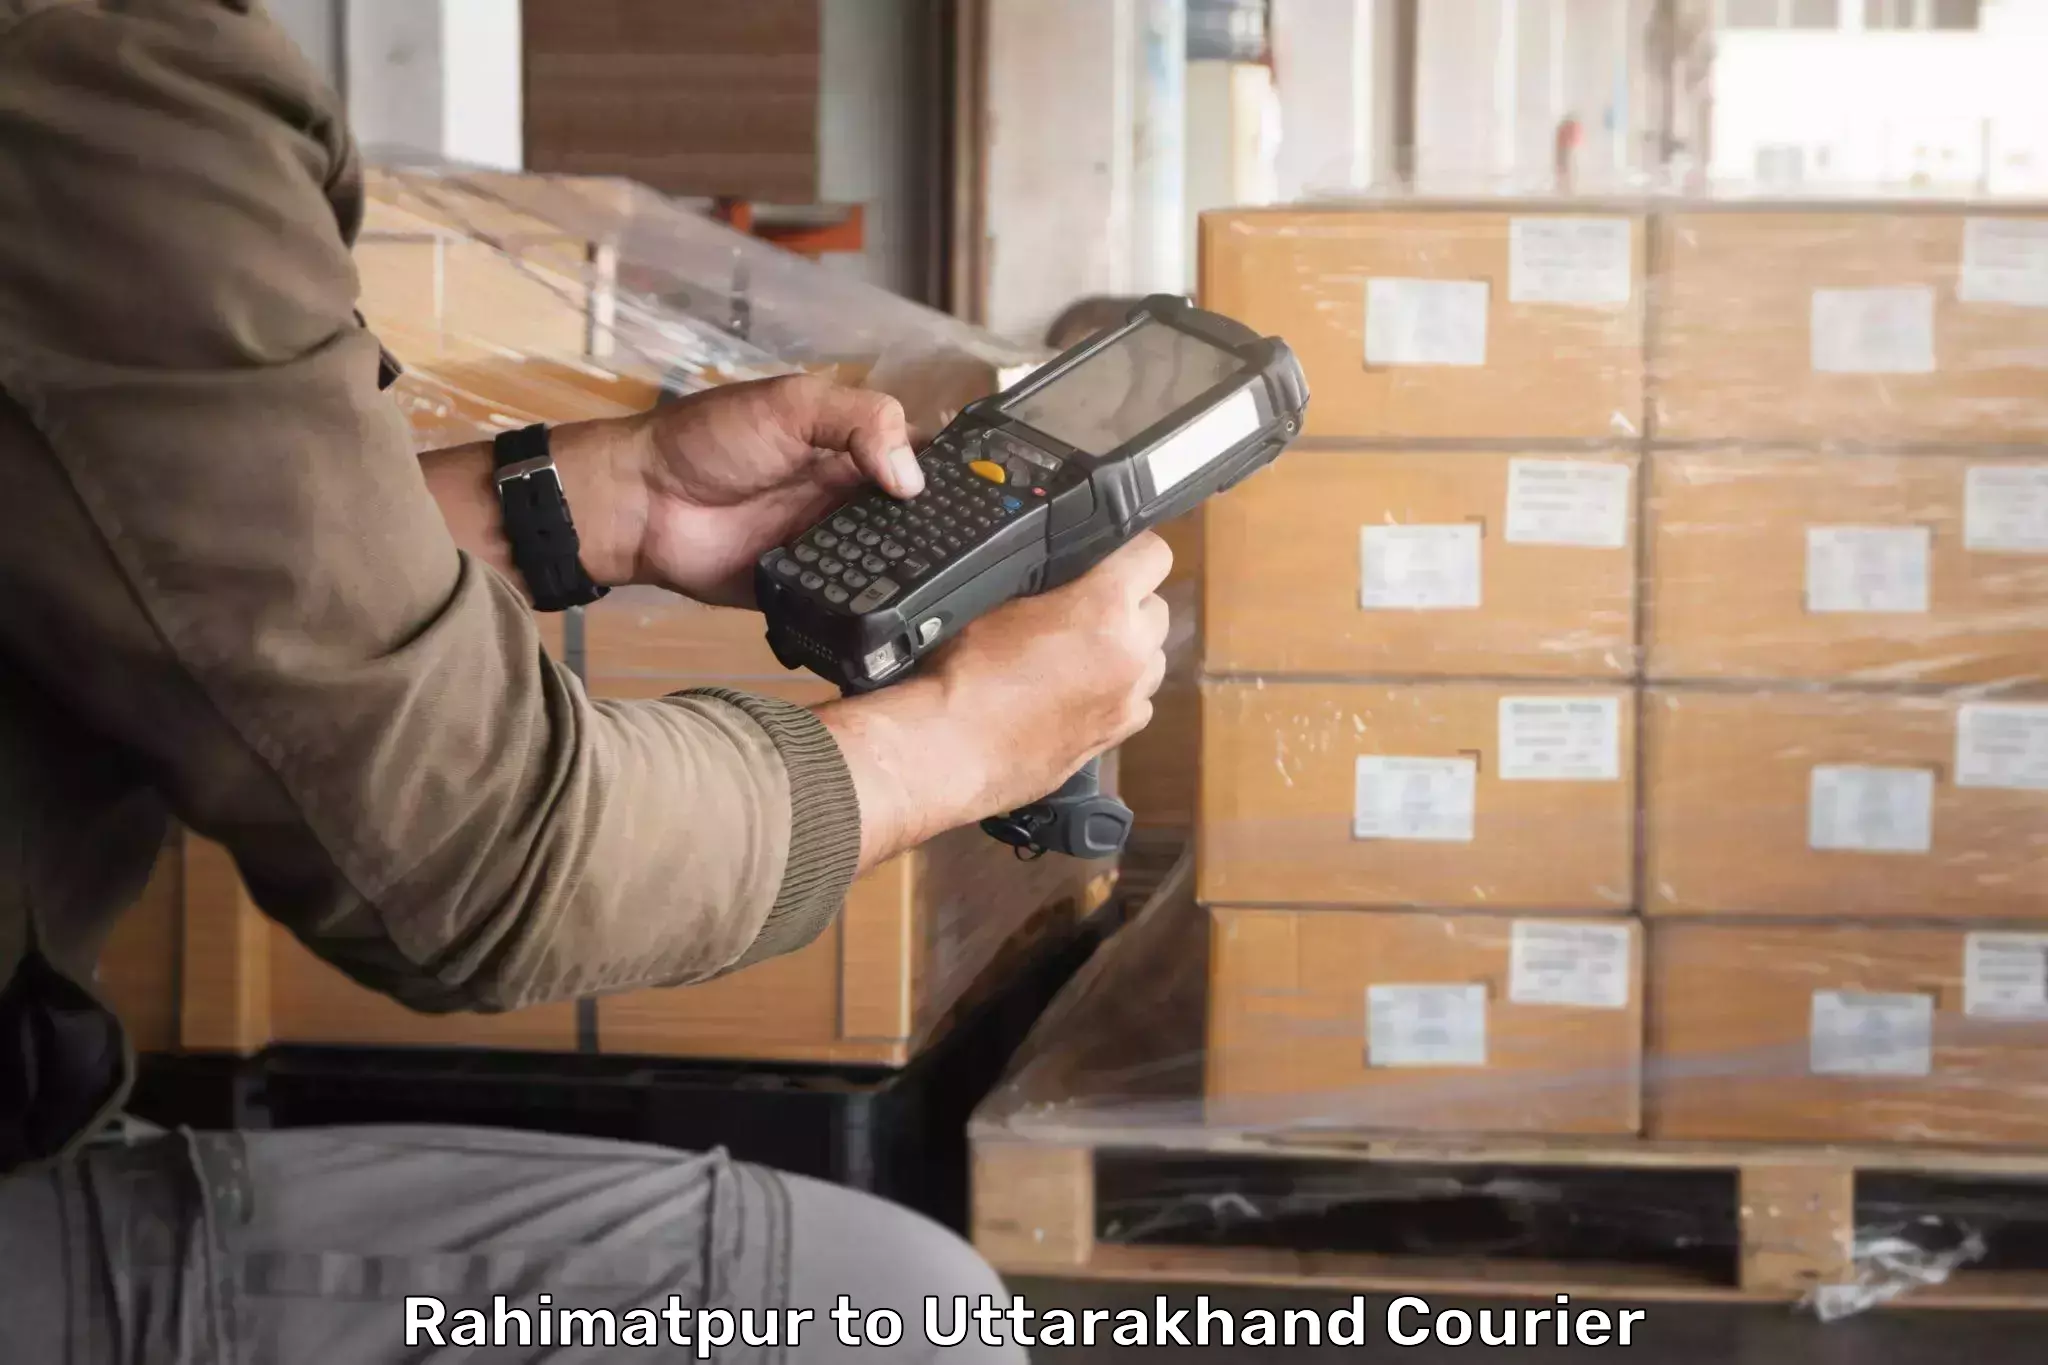 Cost-effective courier options Rahimatpur to Karnaprayag